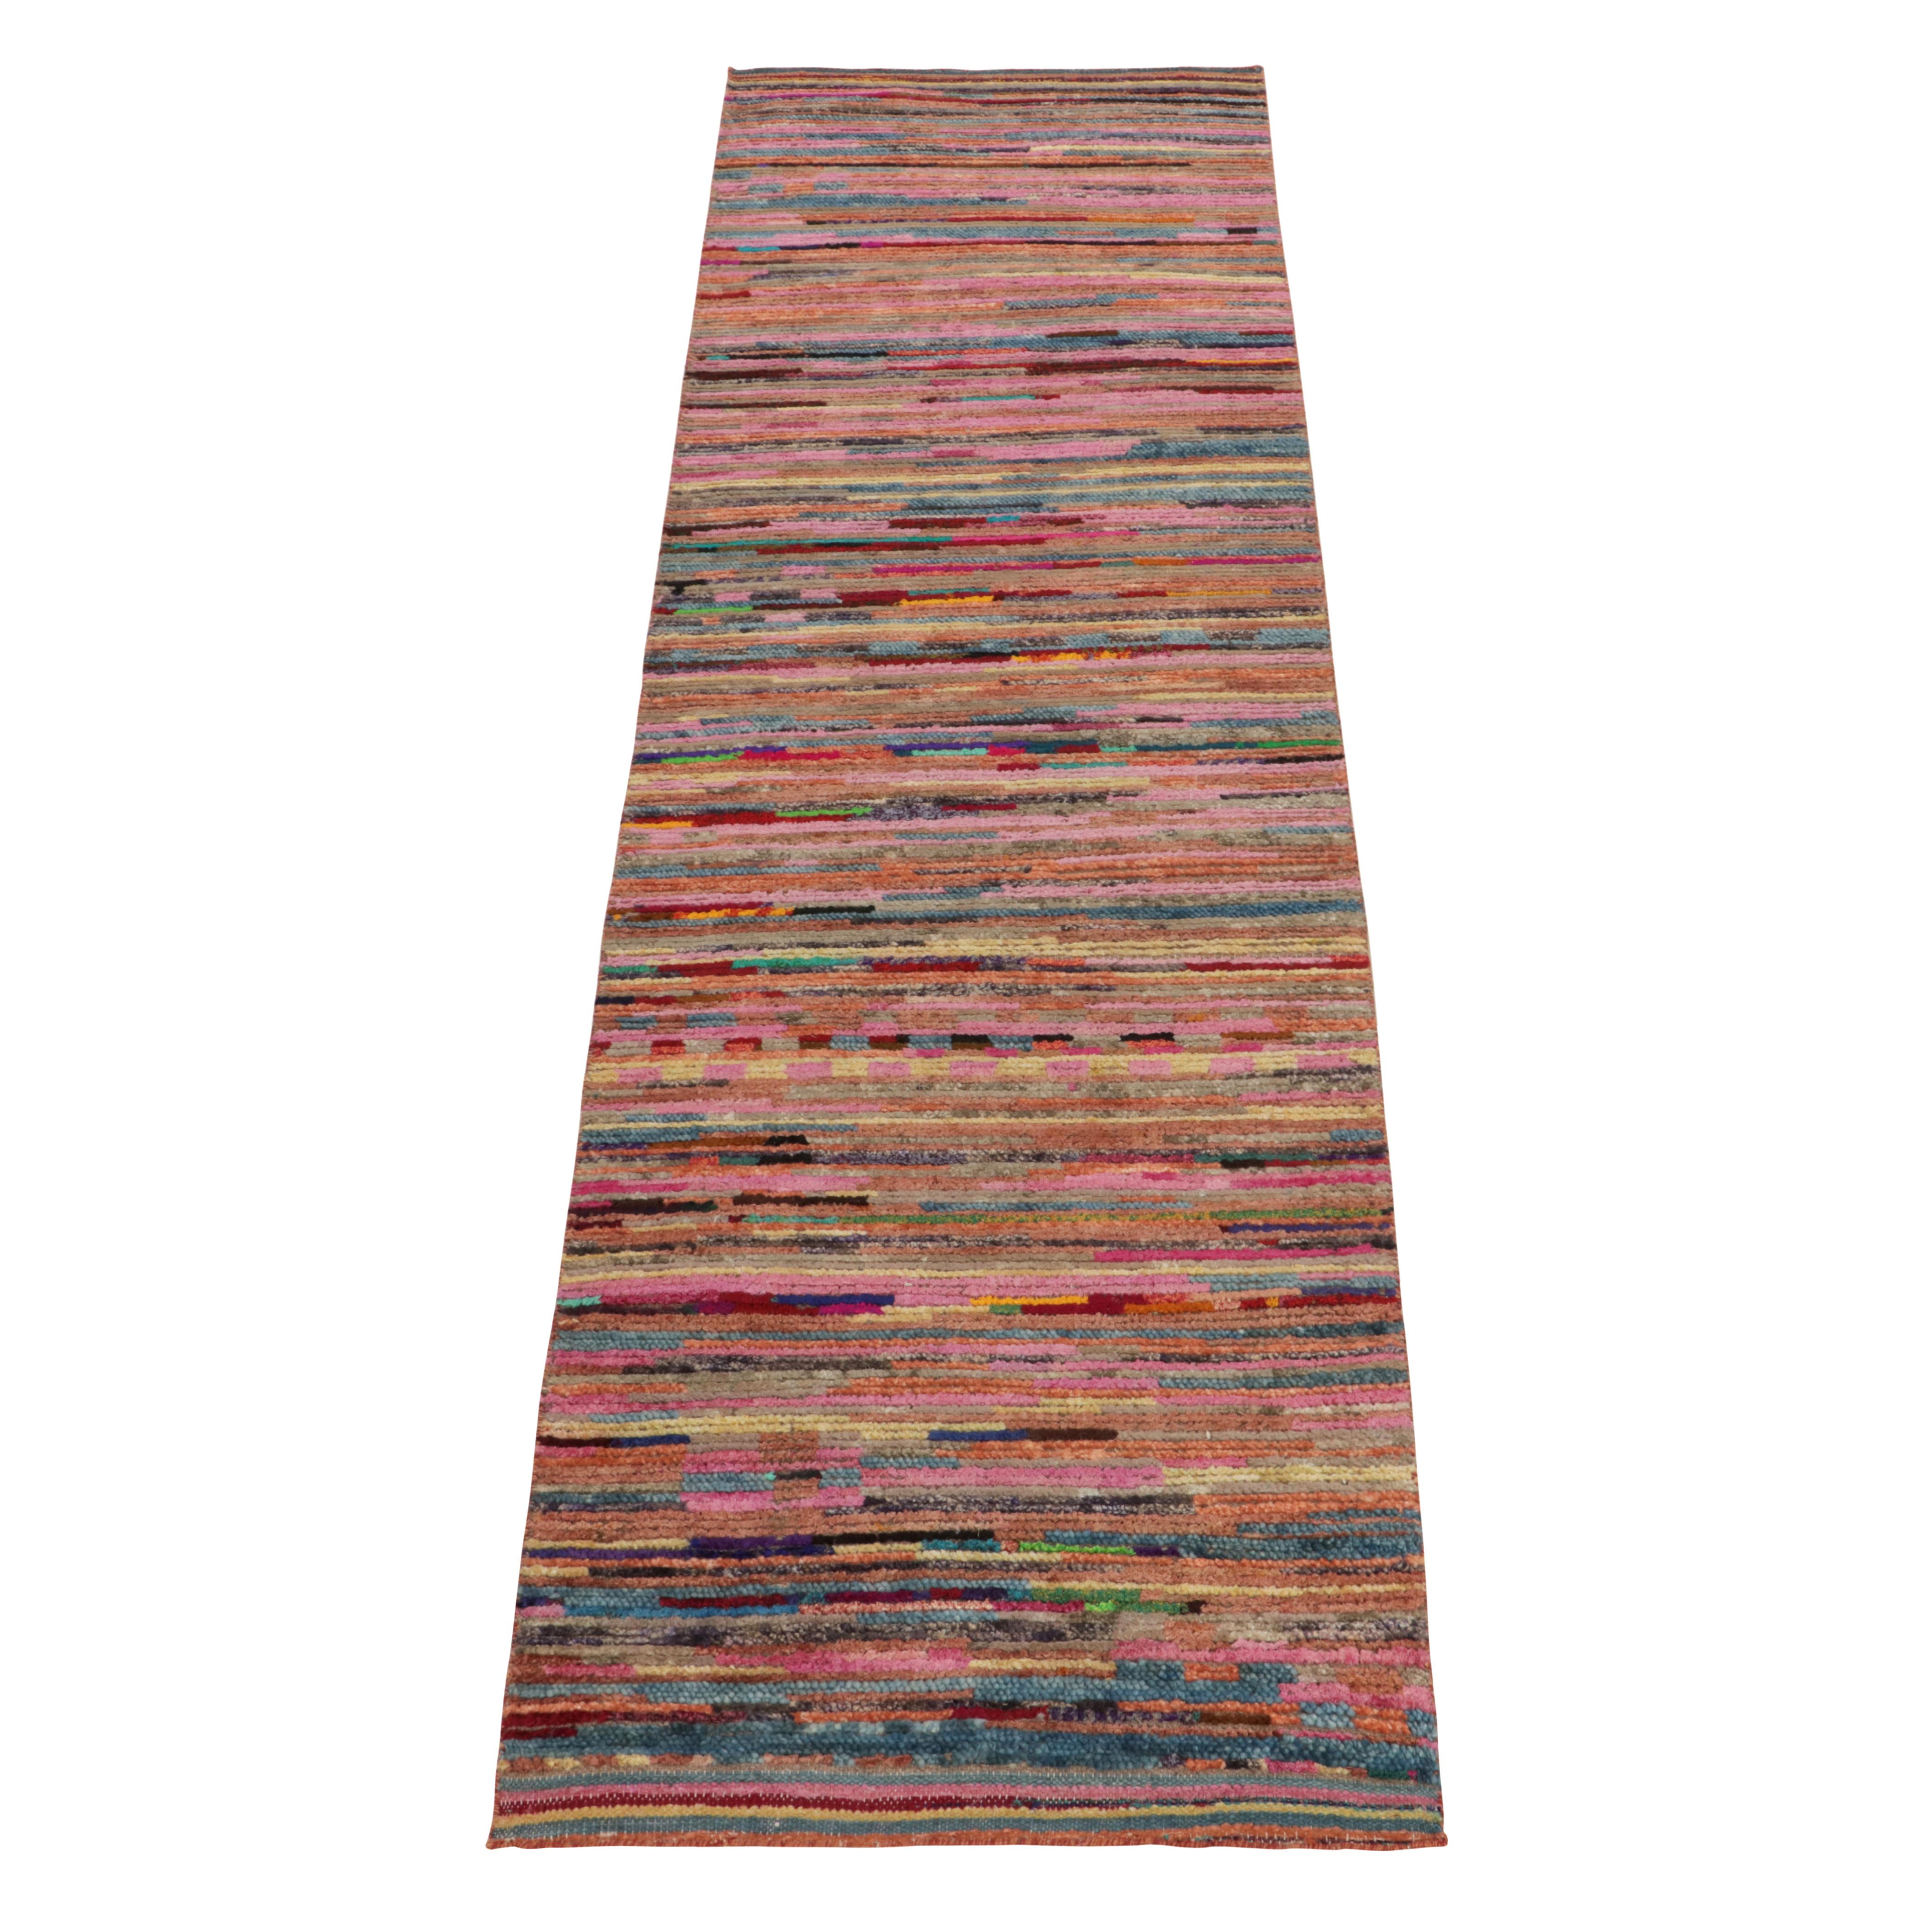 Issu de notre réimagination contemporaine des tapis tribaux marocains, un chemin de table 3x10 en soie nouée à la main bénéficiant d'une exceptionnelle palette de couleurs polychromes. La nuance rose permet d'obtenir des stries dans un spectre de